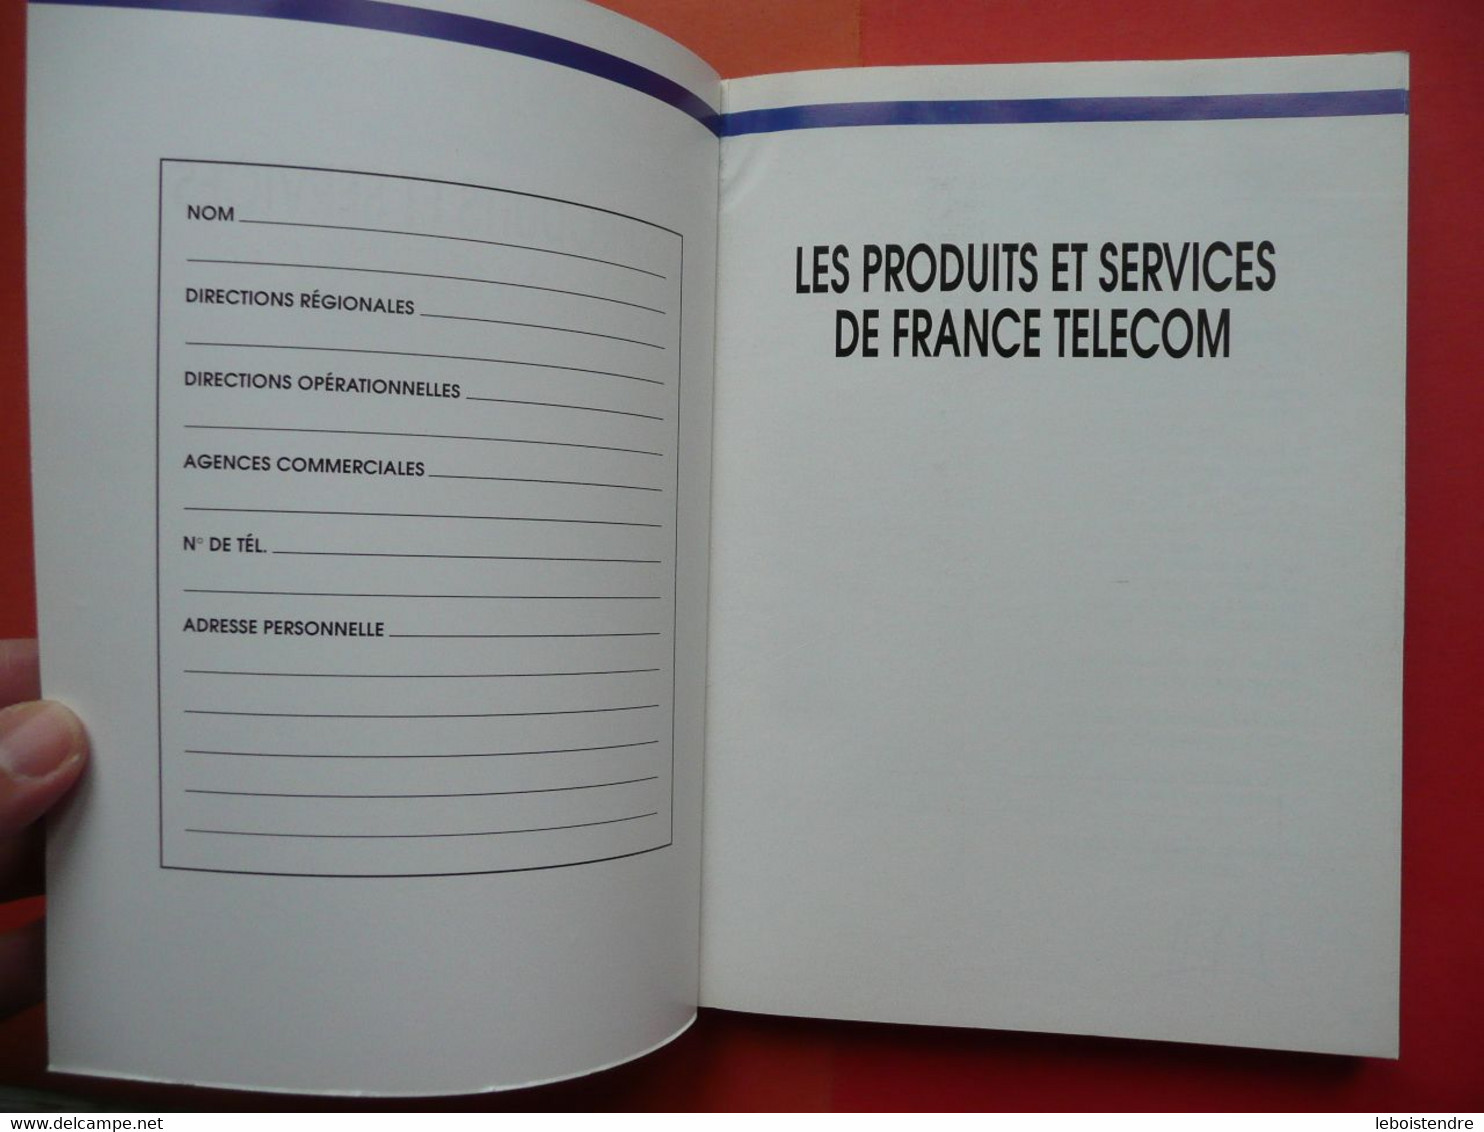 LES PRODUITS ET SERVICES DE FRANCE TELECOM EDITION 1989 / 90 INFORMATION INTERNE GUIDE A USAGE DU RESEAU COMMERCIAL - Audio-video